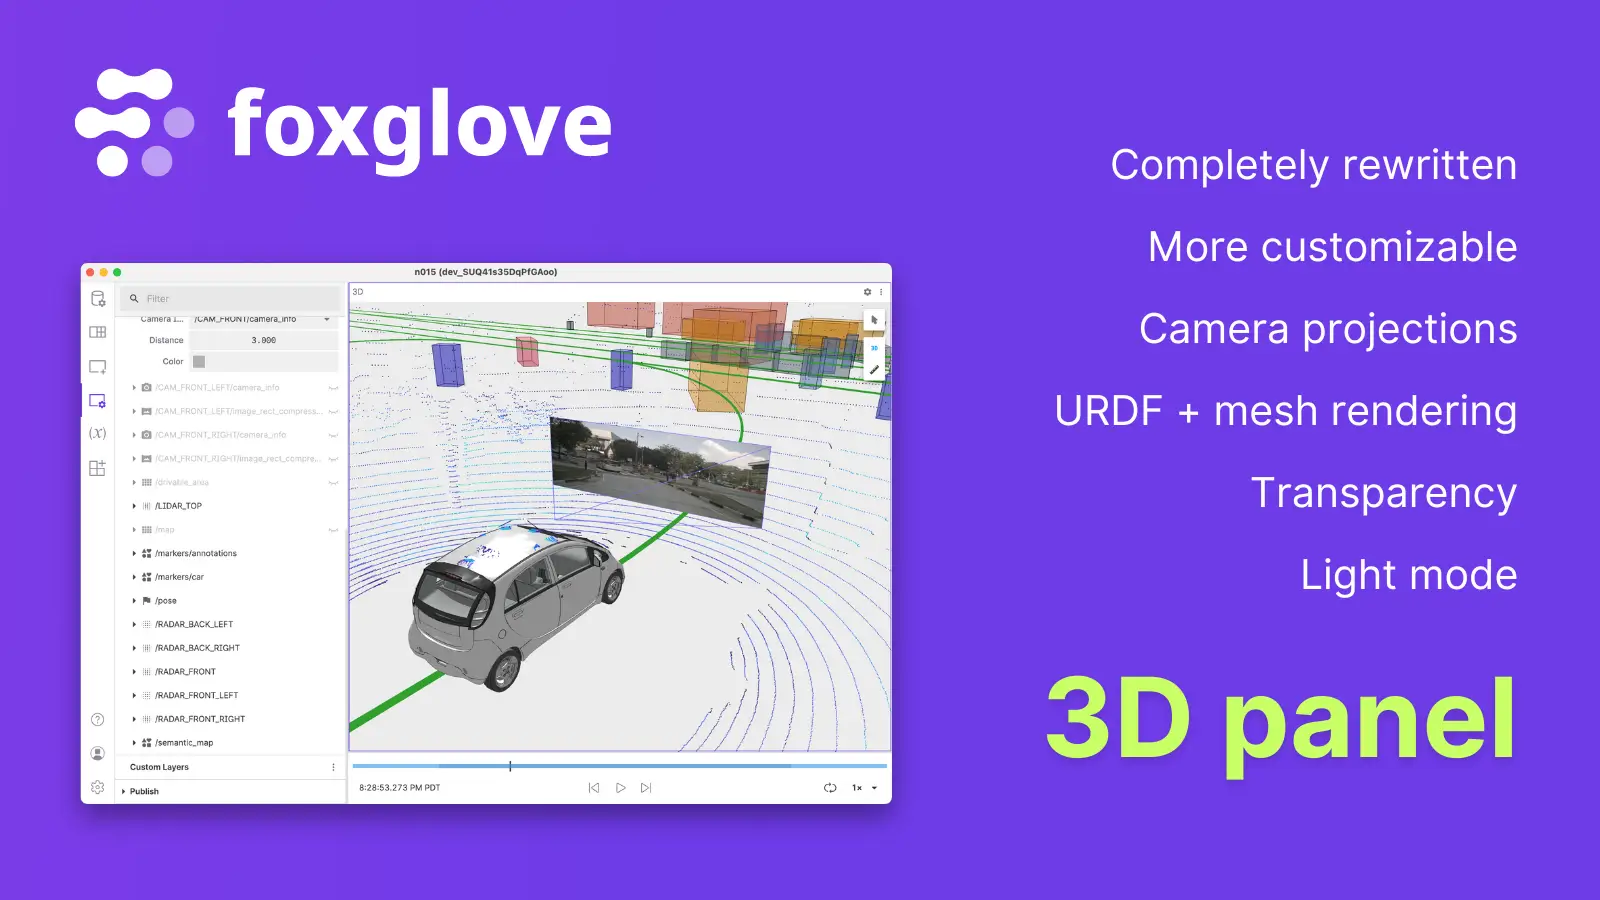 Announcing Foxglove's New 3D Panel